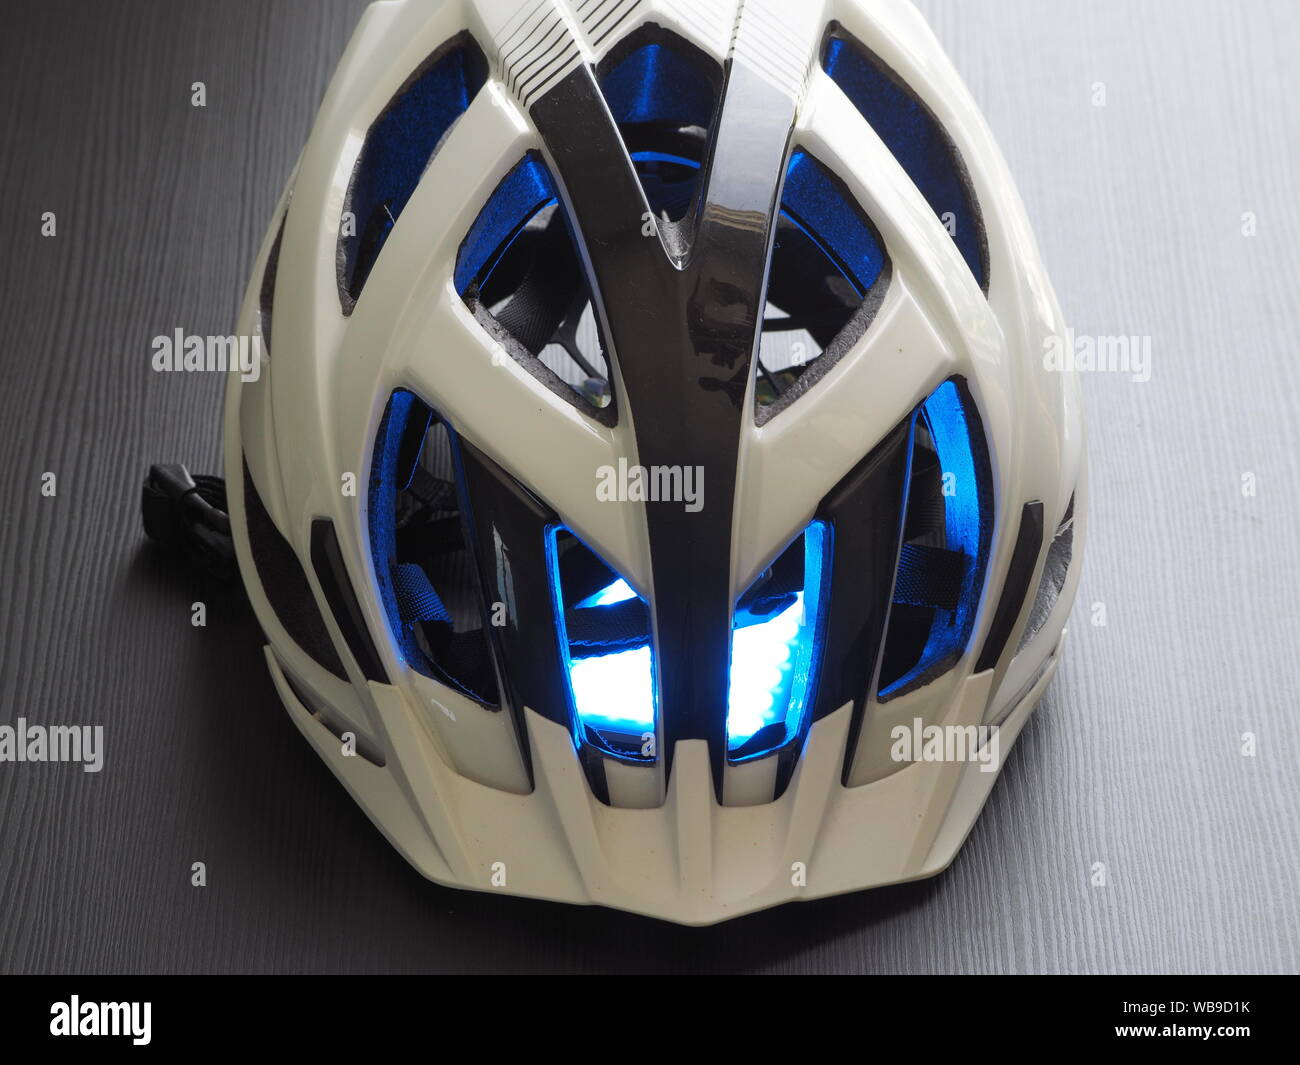 Blanc casque de vélo, illumination bleue à l'intérieur. Le concept de refroidissement. Banque D'Images